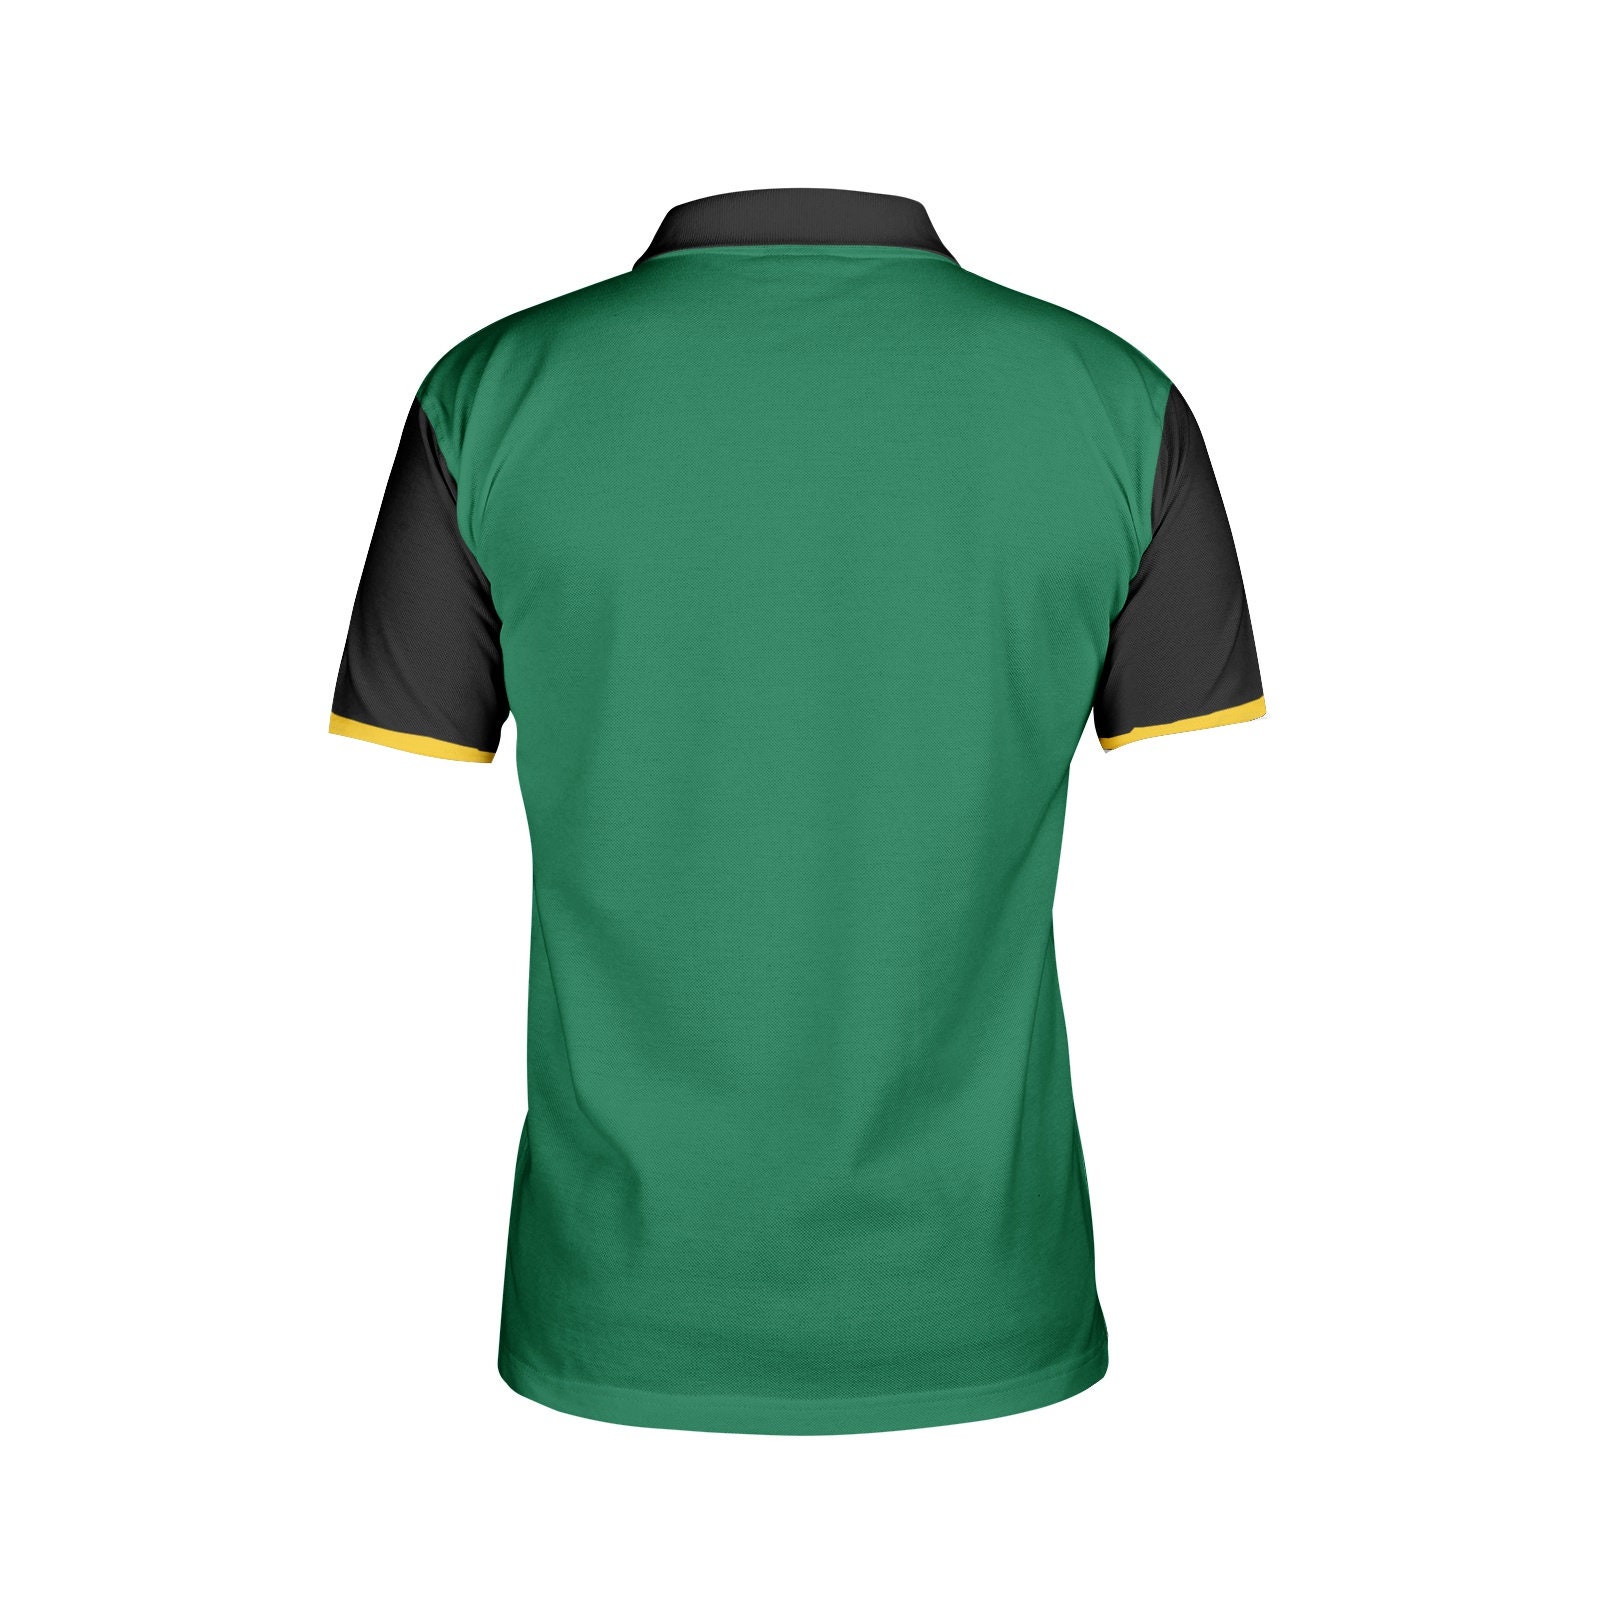 Jamaica polo shirt